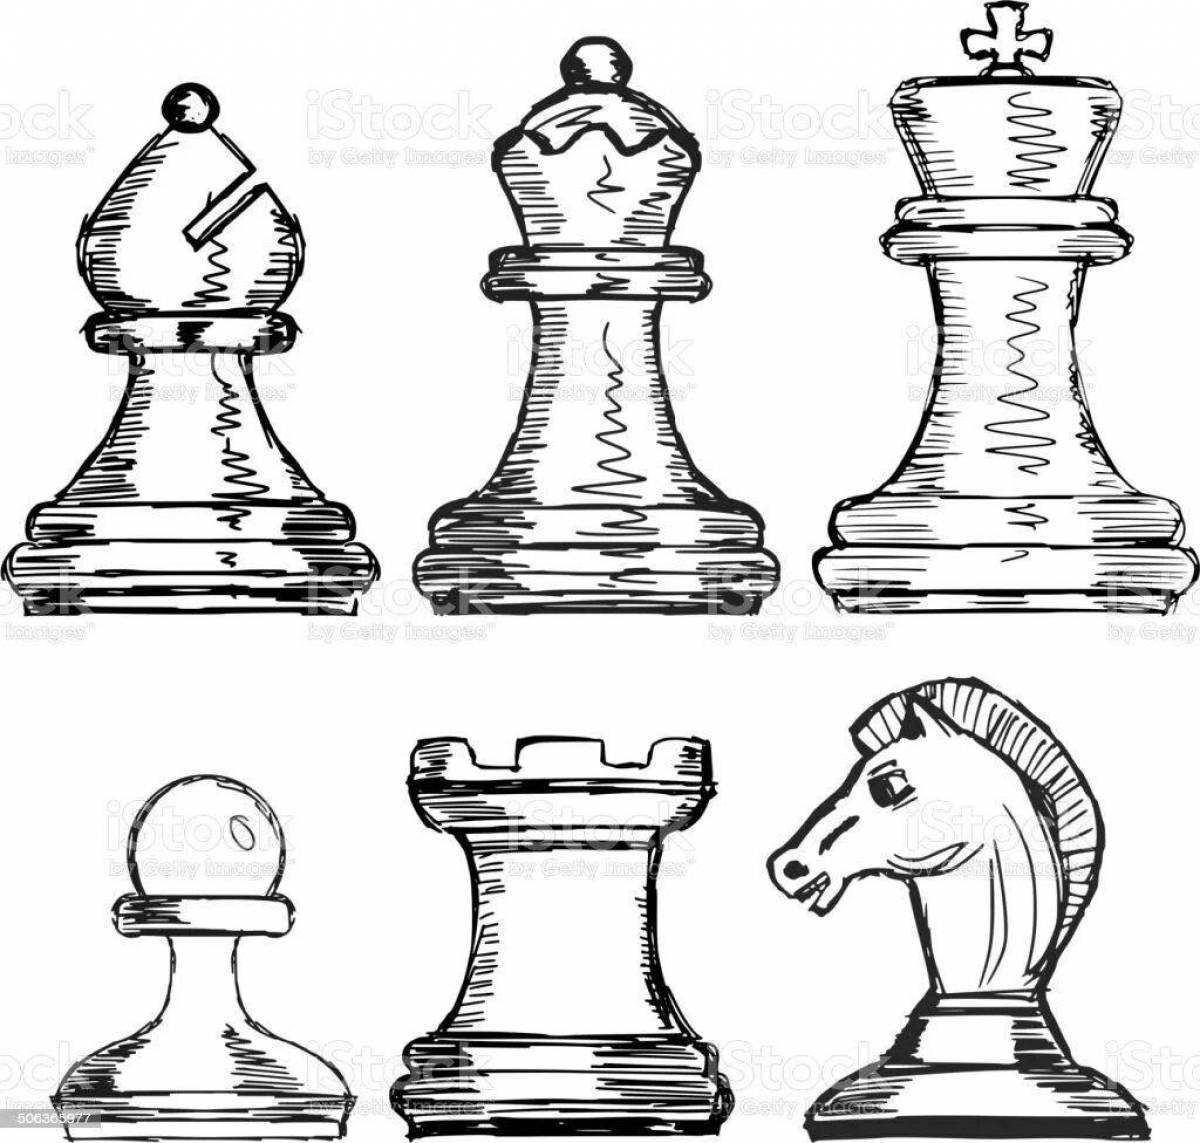 Красочные шахматные фигуры раскраски для детей, чтобы учиться